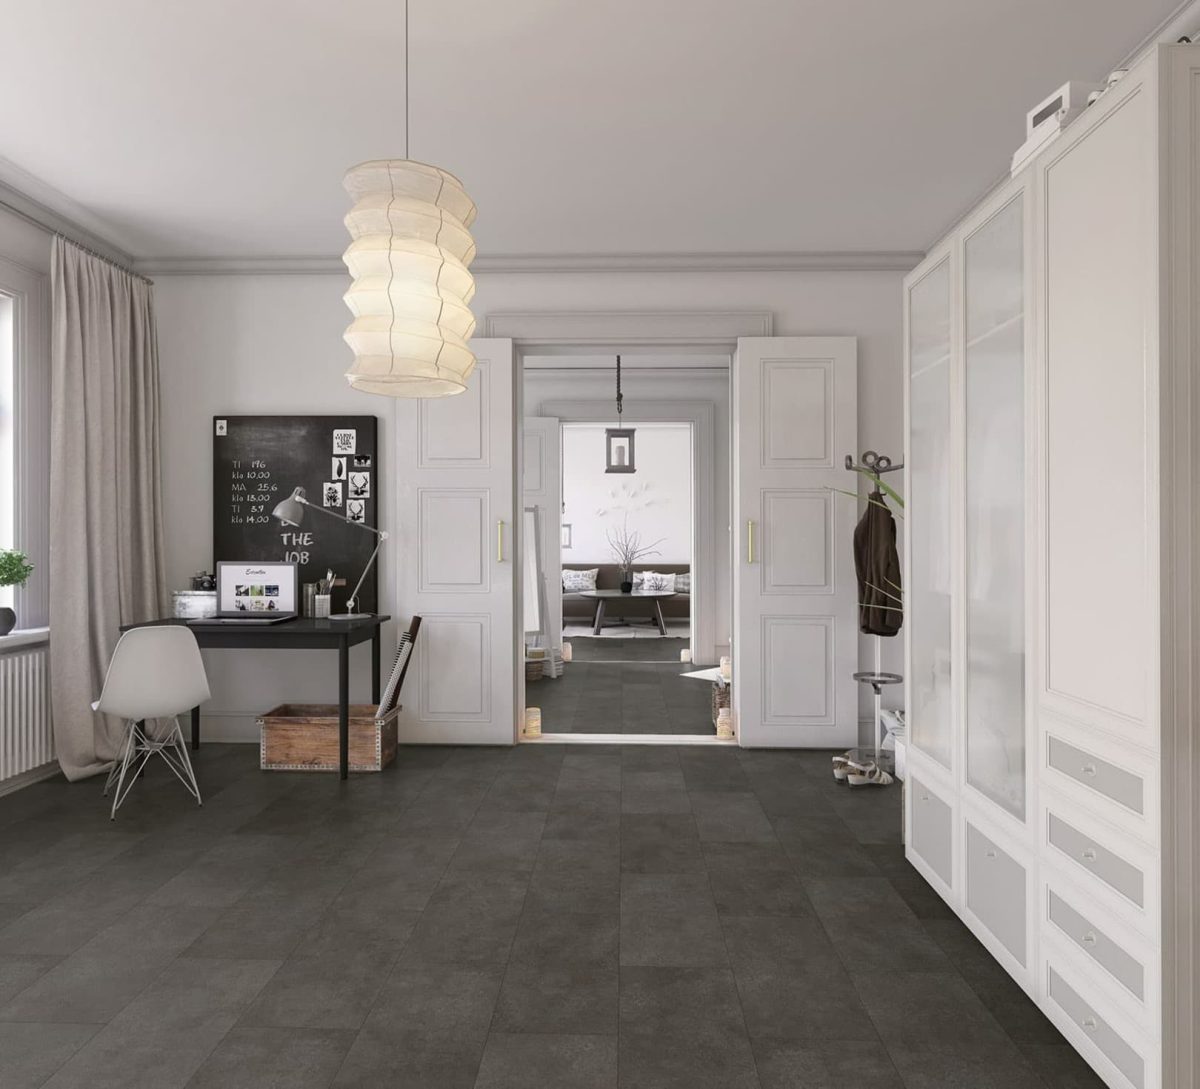 SIKO_Obkladové panely, šedá antracitová podlaha, posuvné dveře, moderní interiér, bílé skříně, domácí pracovní koutek.